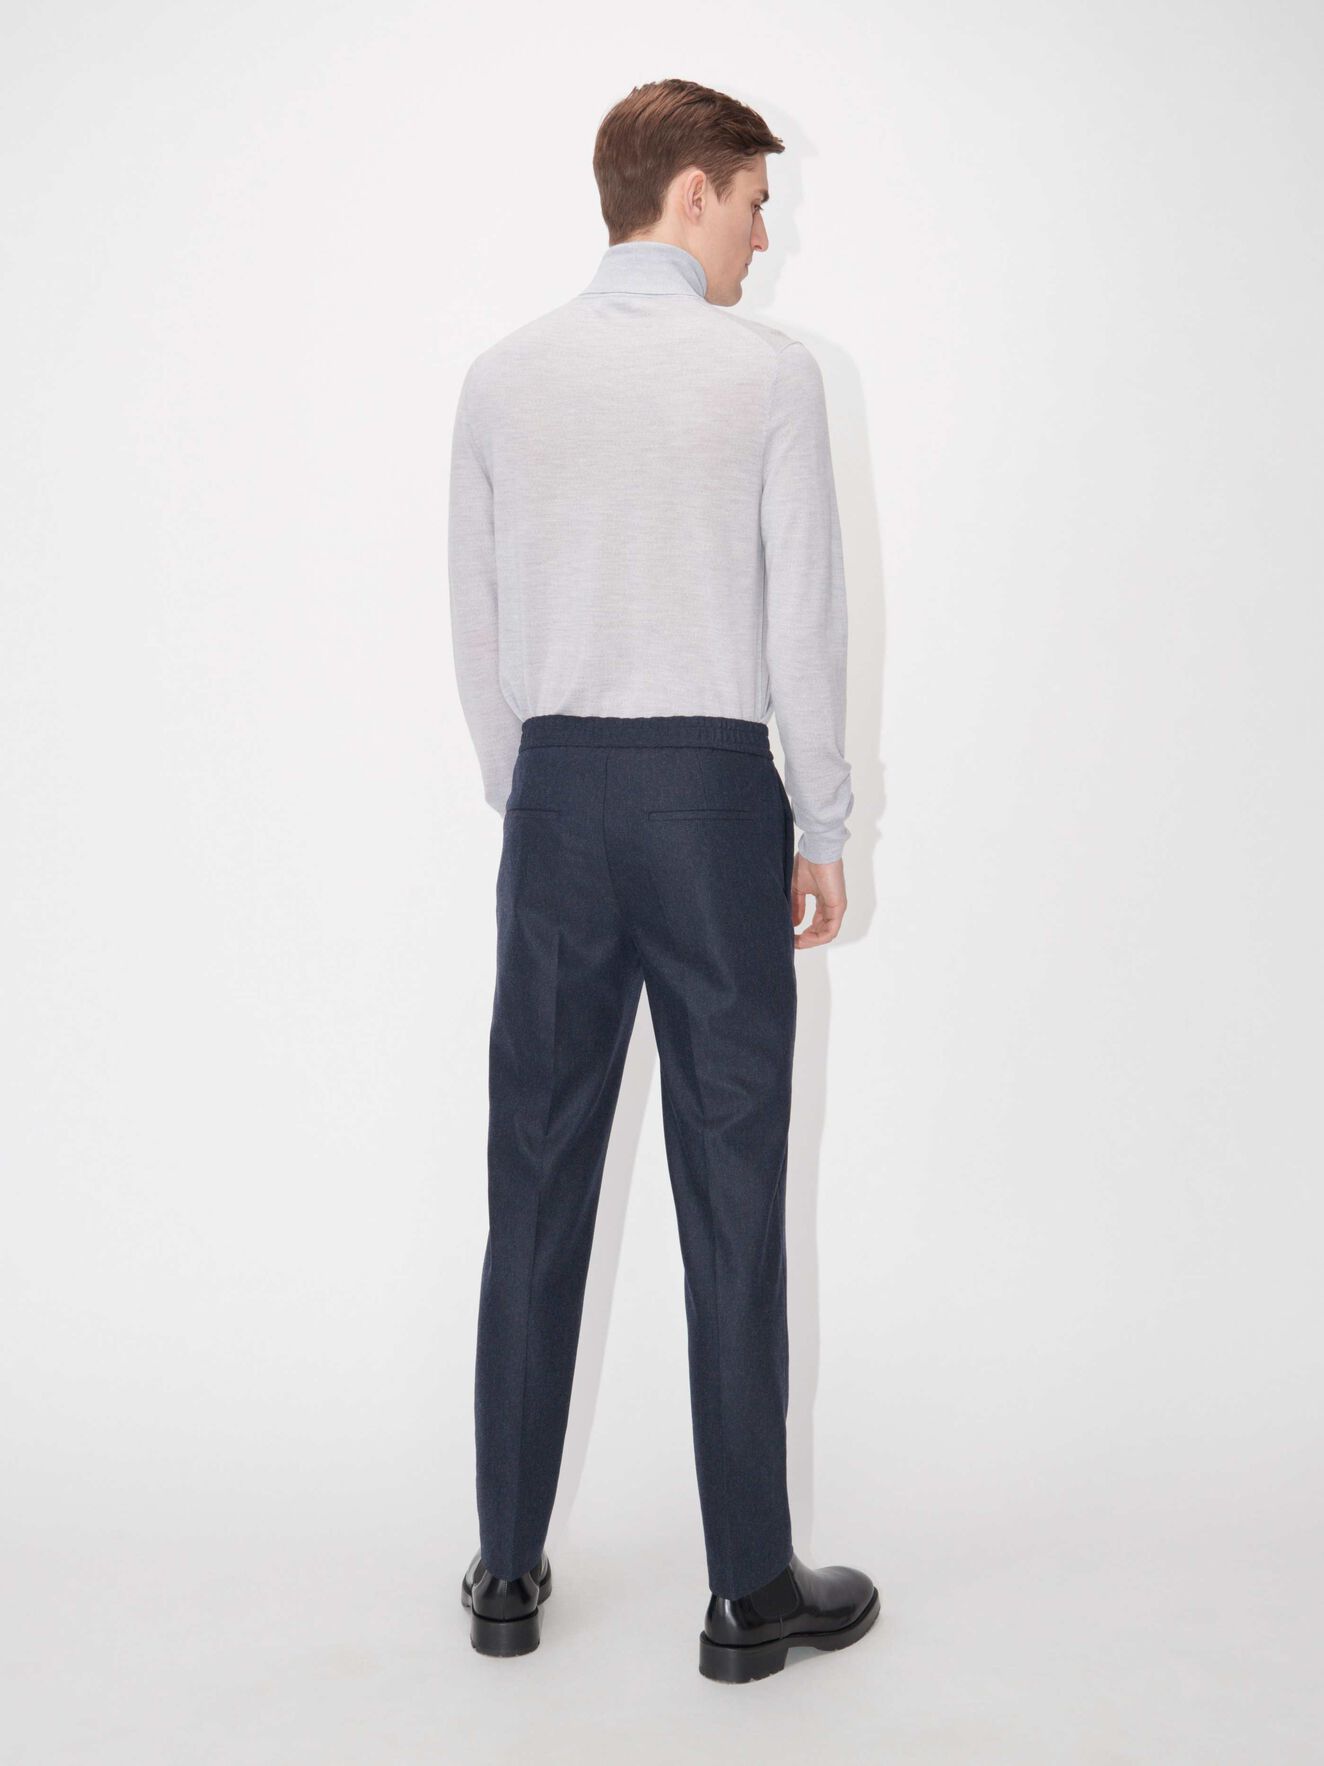 Nevile Pullover - Köp Knitwear online